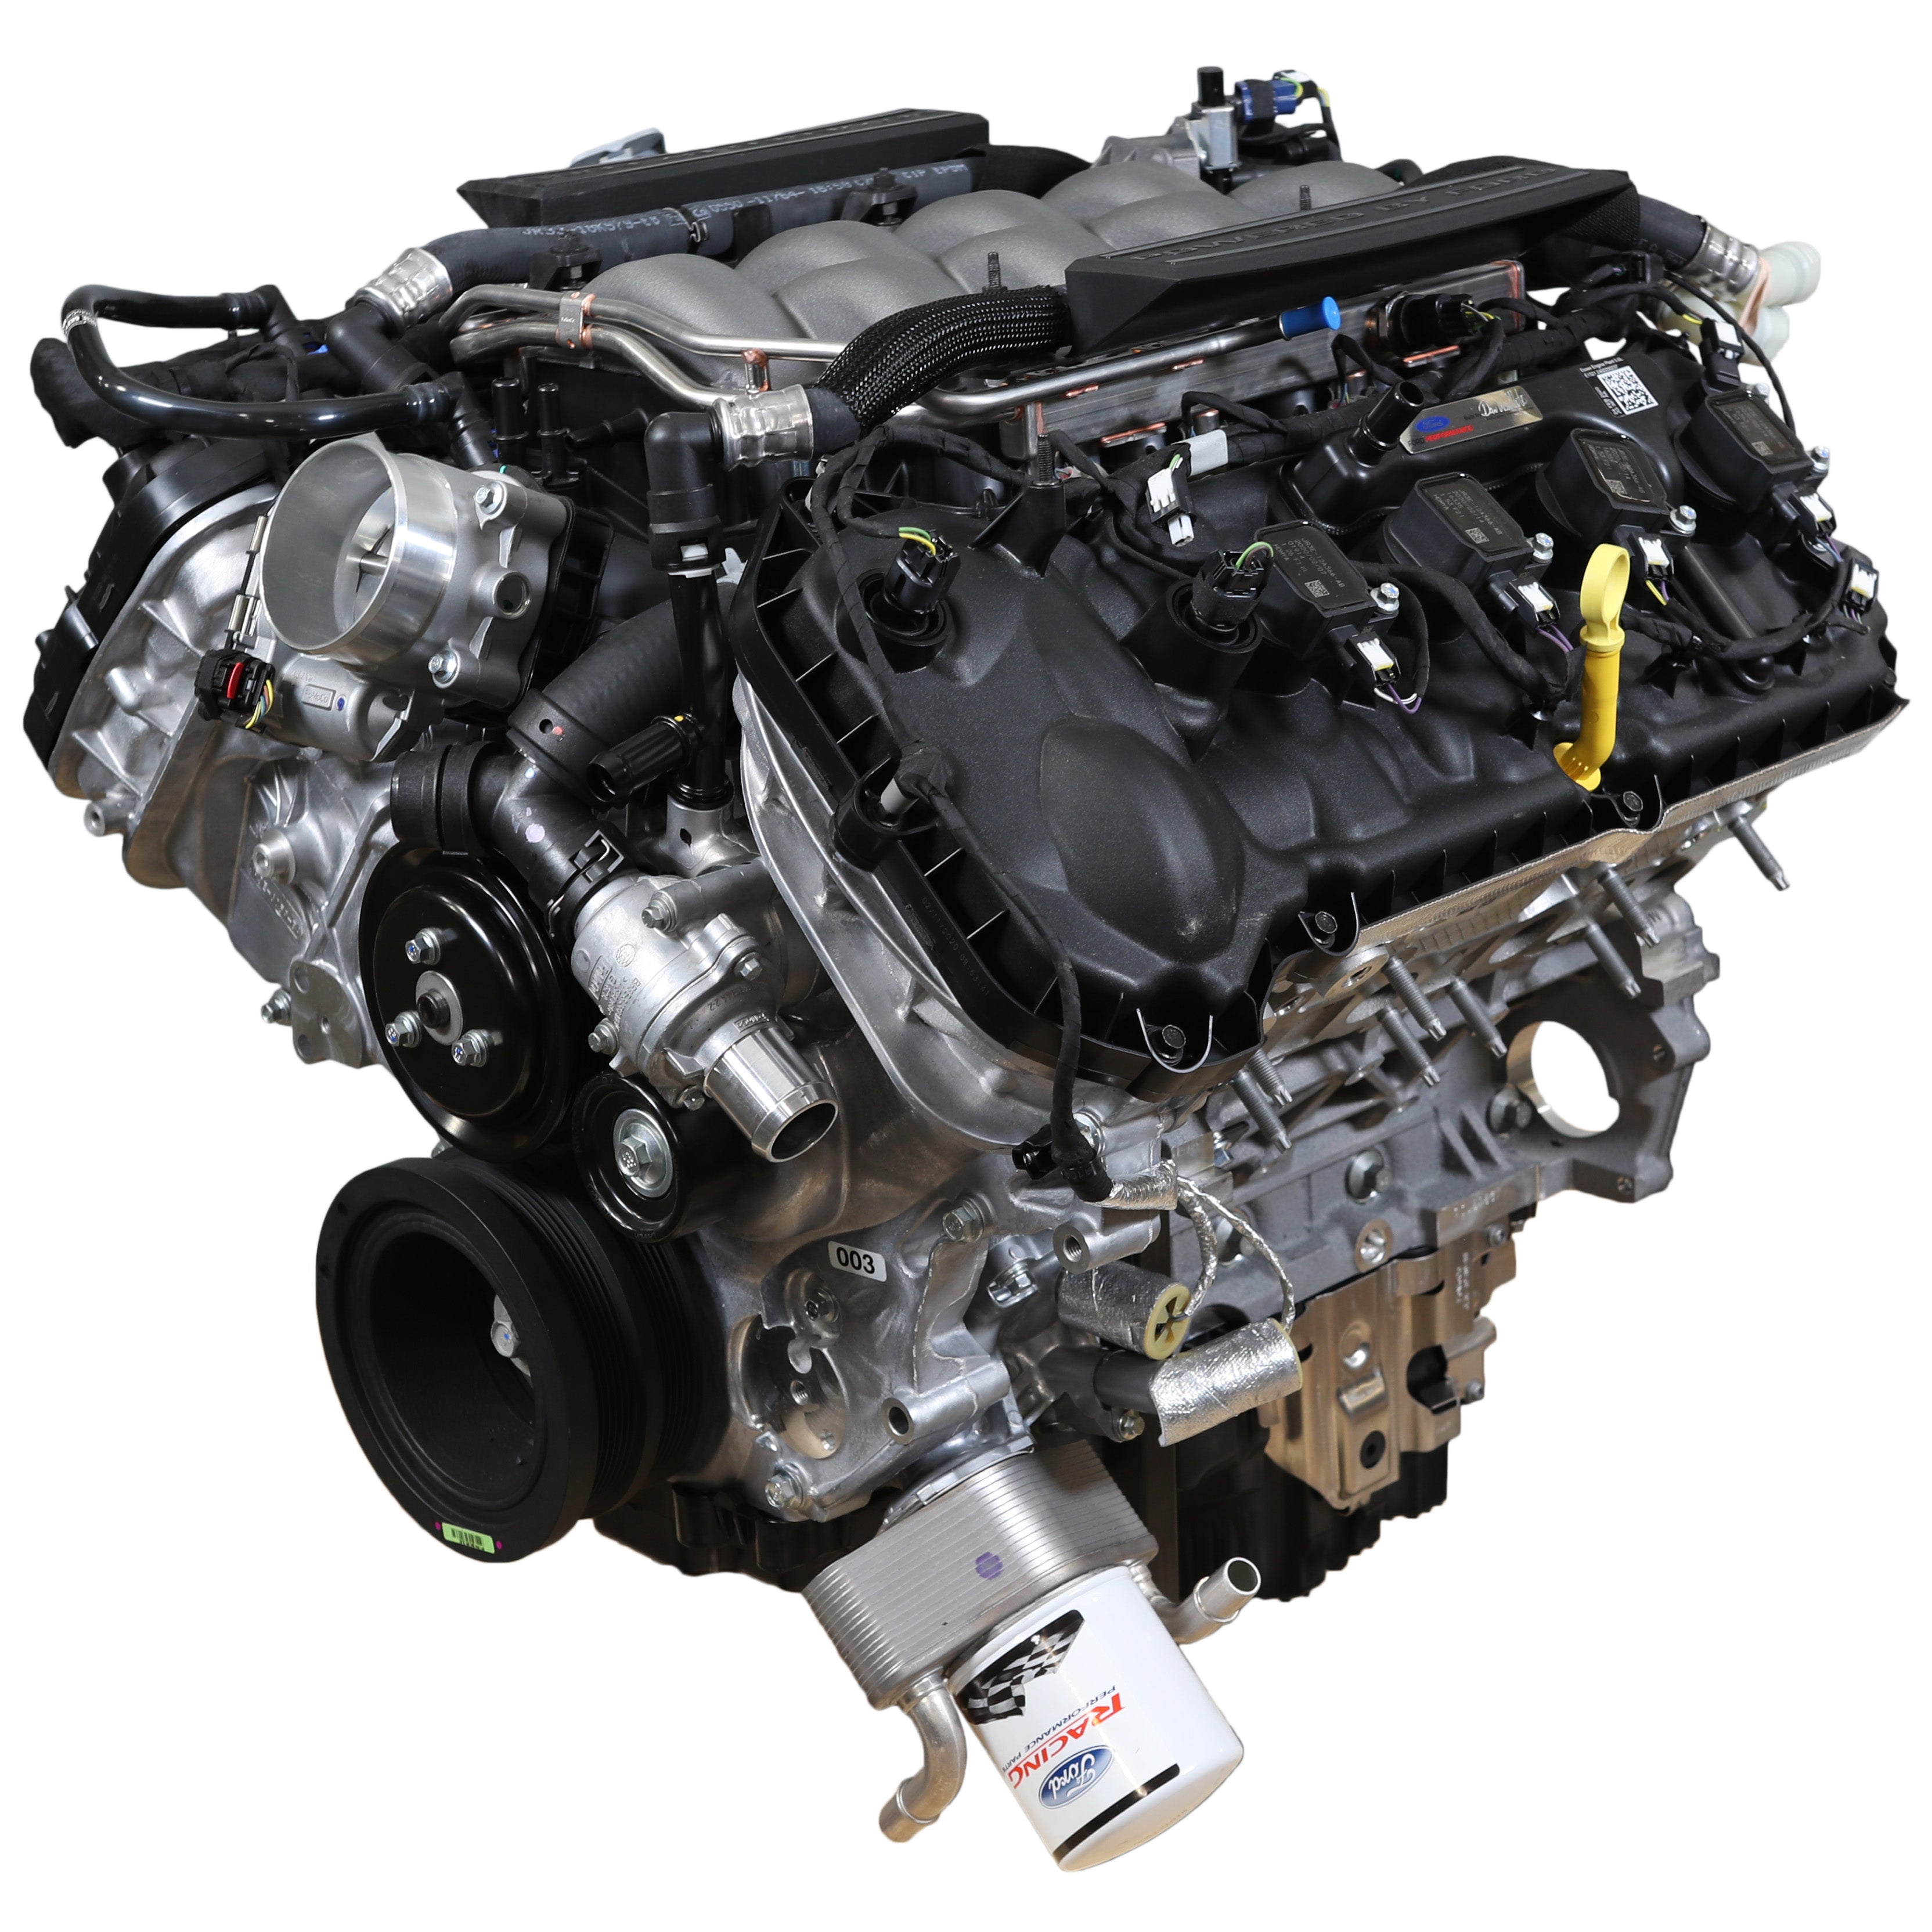 Motor armado Ford Performance 5.0L "Aluminator" Gen 3 - Compresión baja para construcciones FI